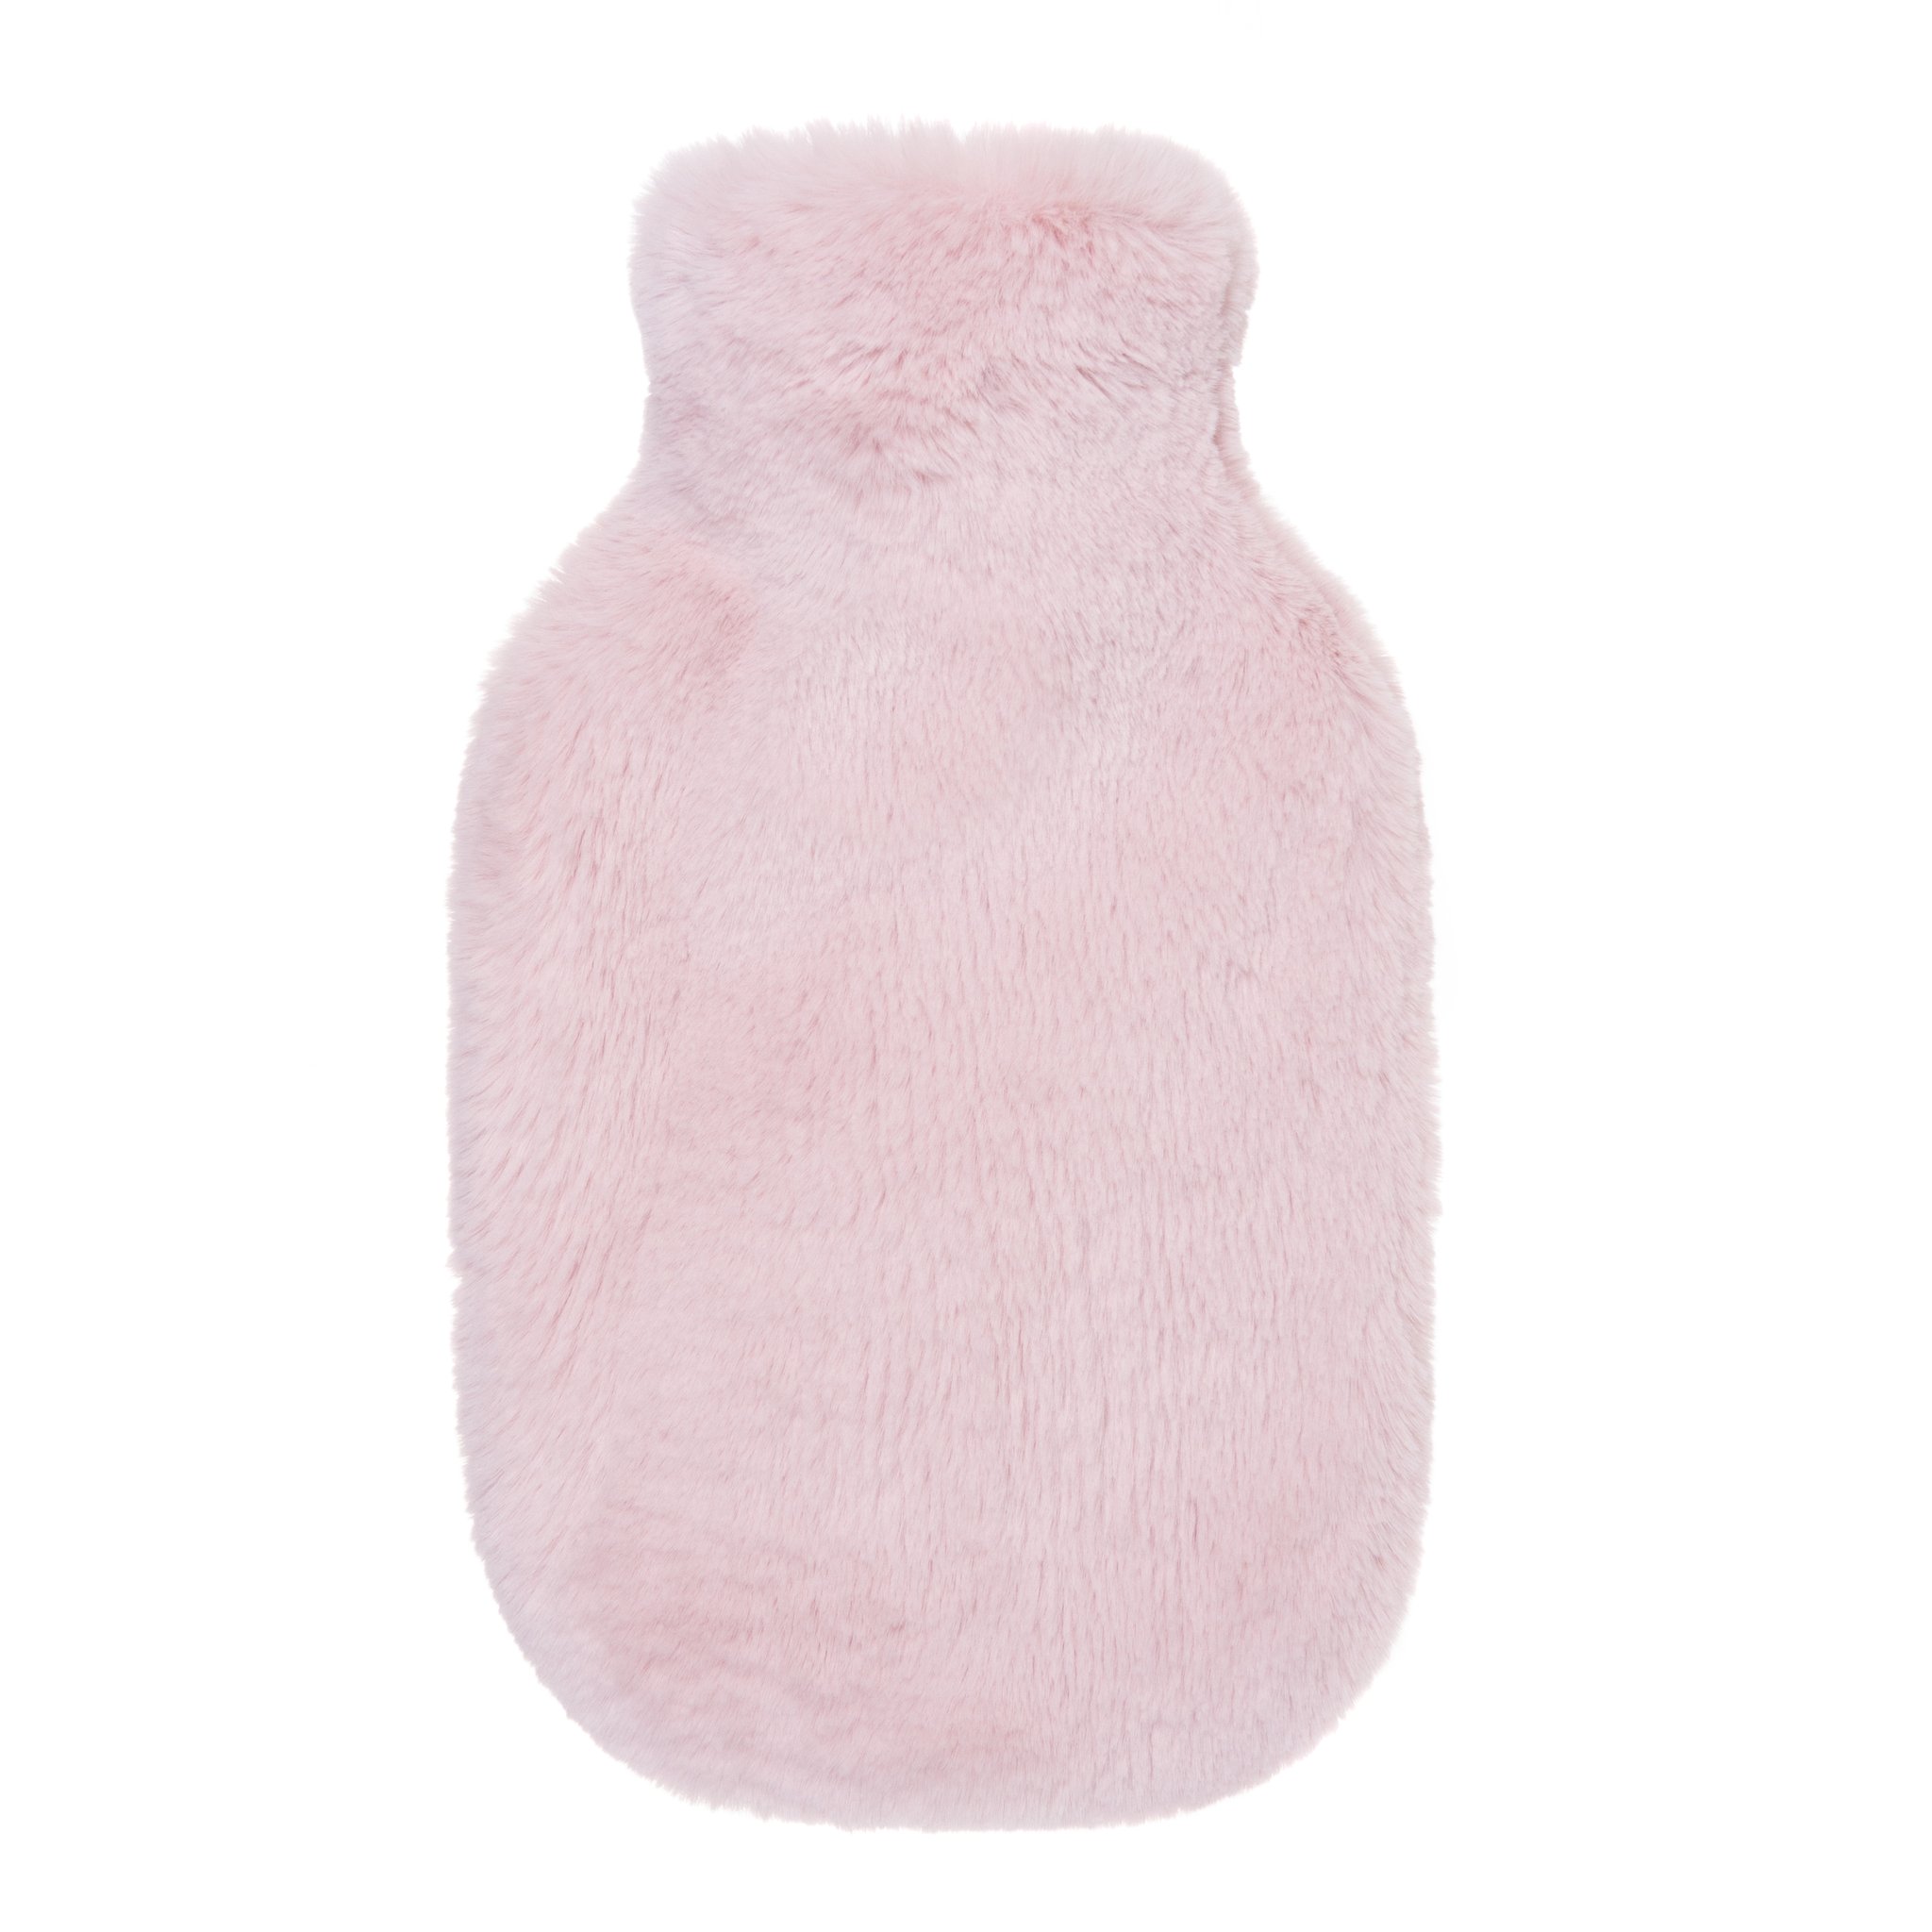 Helen Moore Blossom Cloud Luxury Faux Fur Hot Water Bottle